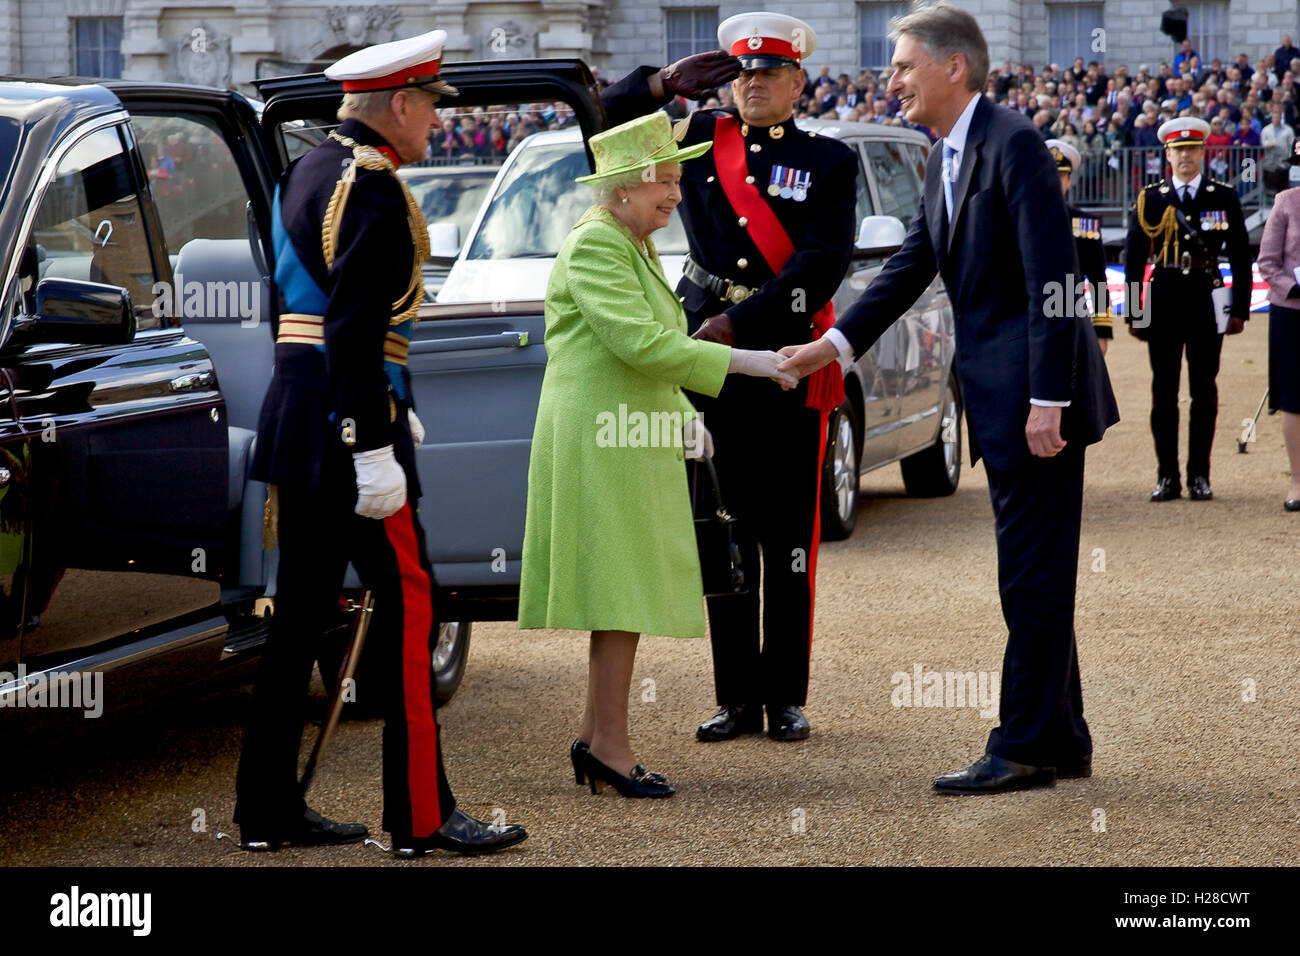 La reine Elizabeth II de Grande-bretagne est accueilli par le Ministre des affaires étrangères, Philip Hammond comme elle arrive à la Royal Marine de battre en retraite à la spectaculaire musique Horse Guards Parade le 4 juin 2014 à Londres, en Angleterre. Banque D'Images